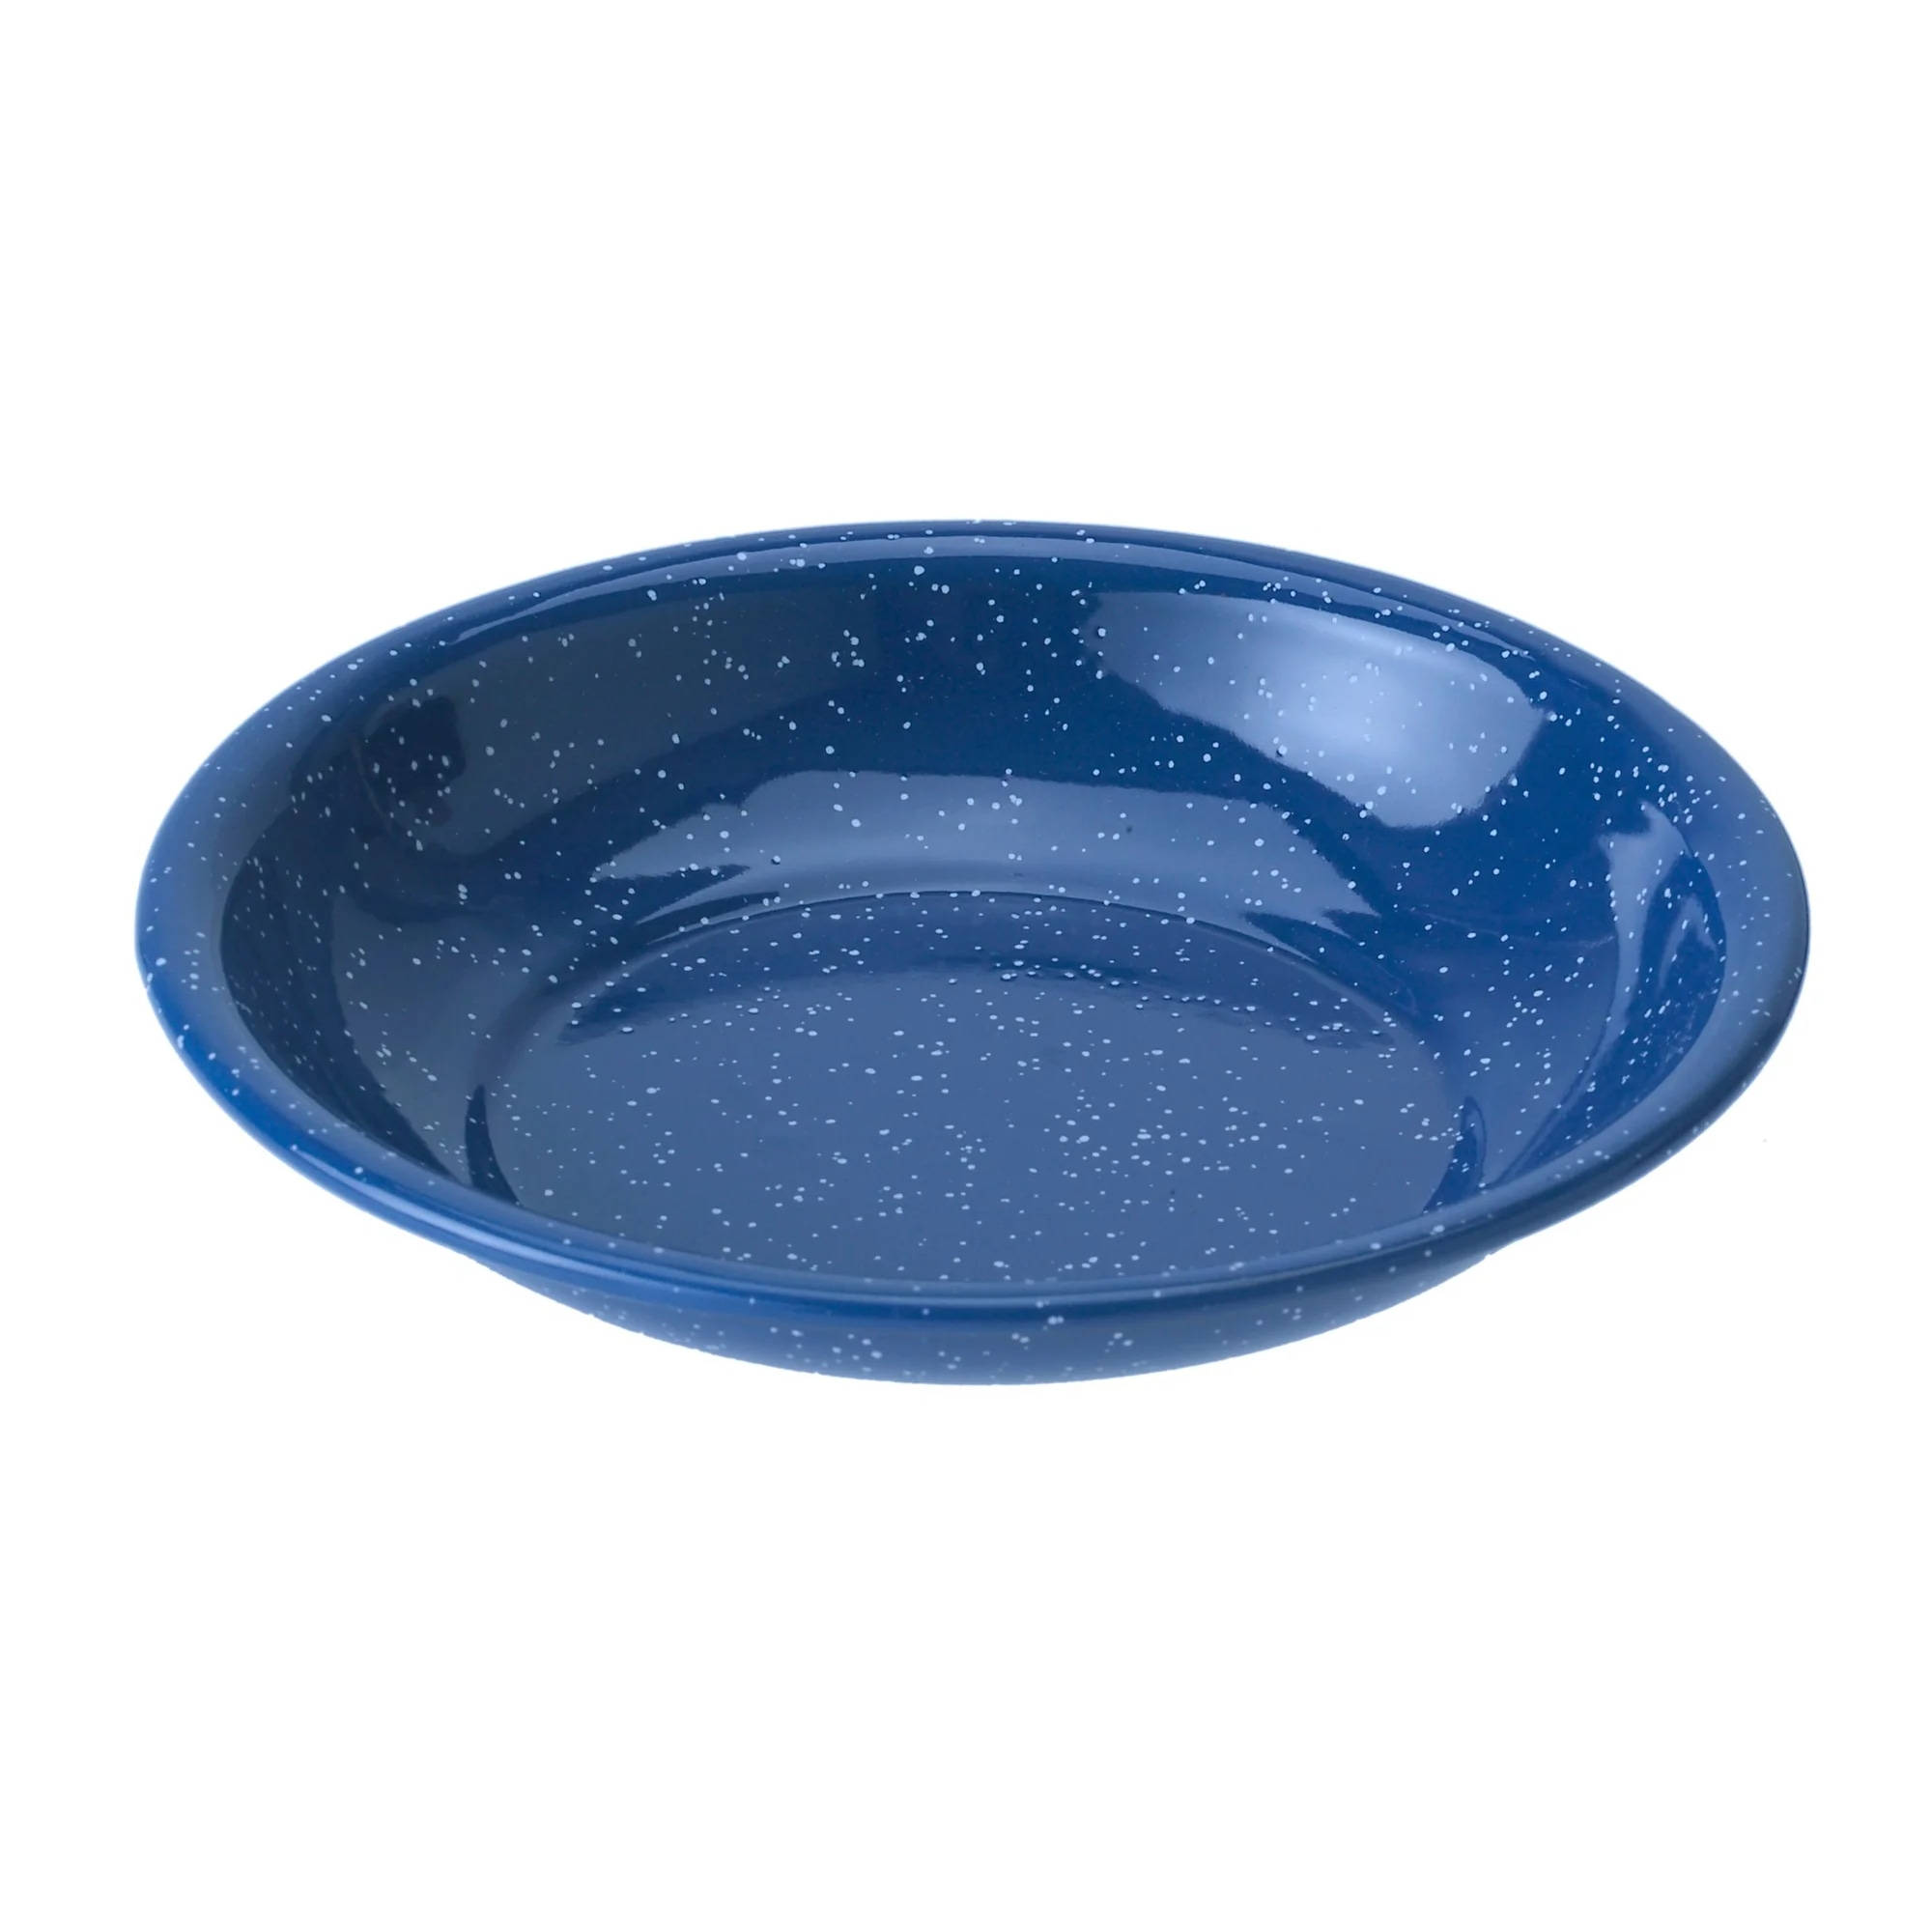 Enamelware Cereal Bowl Blue